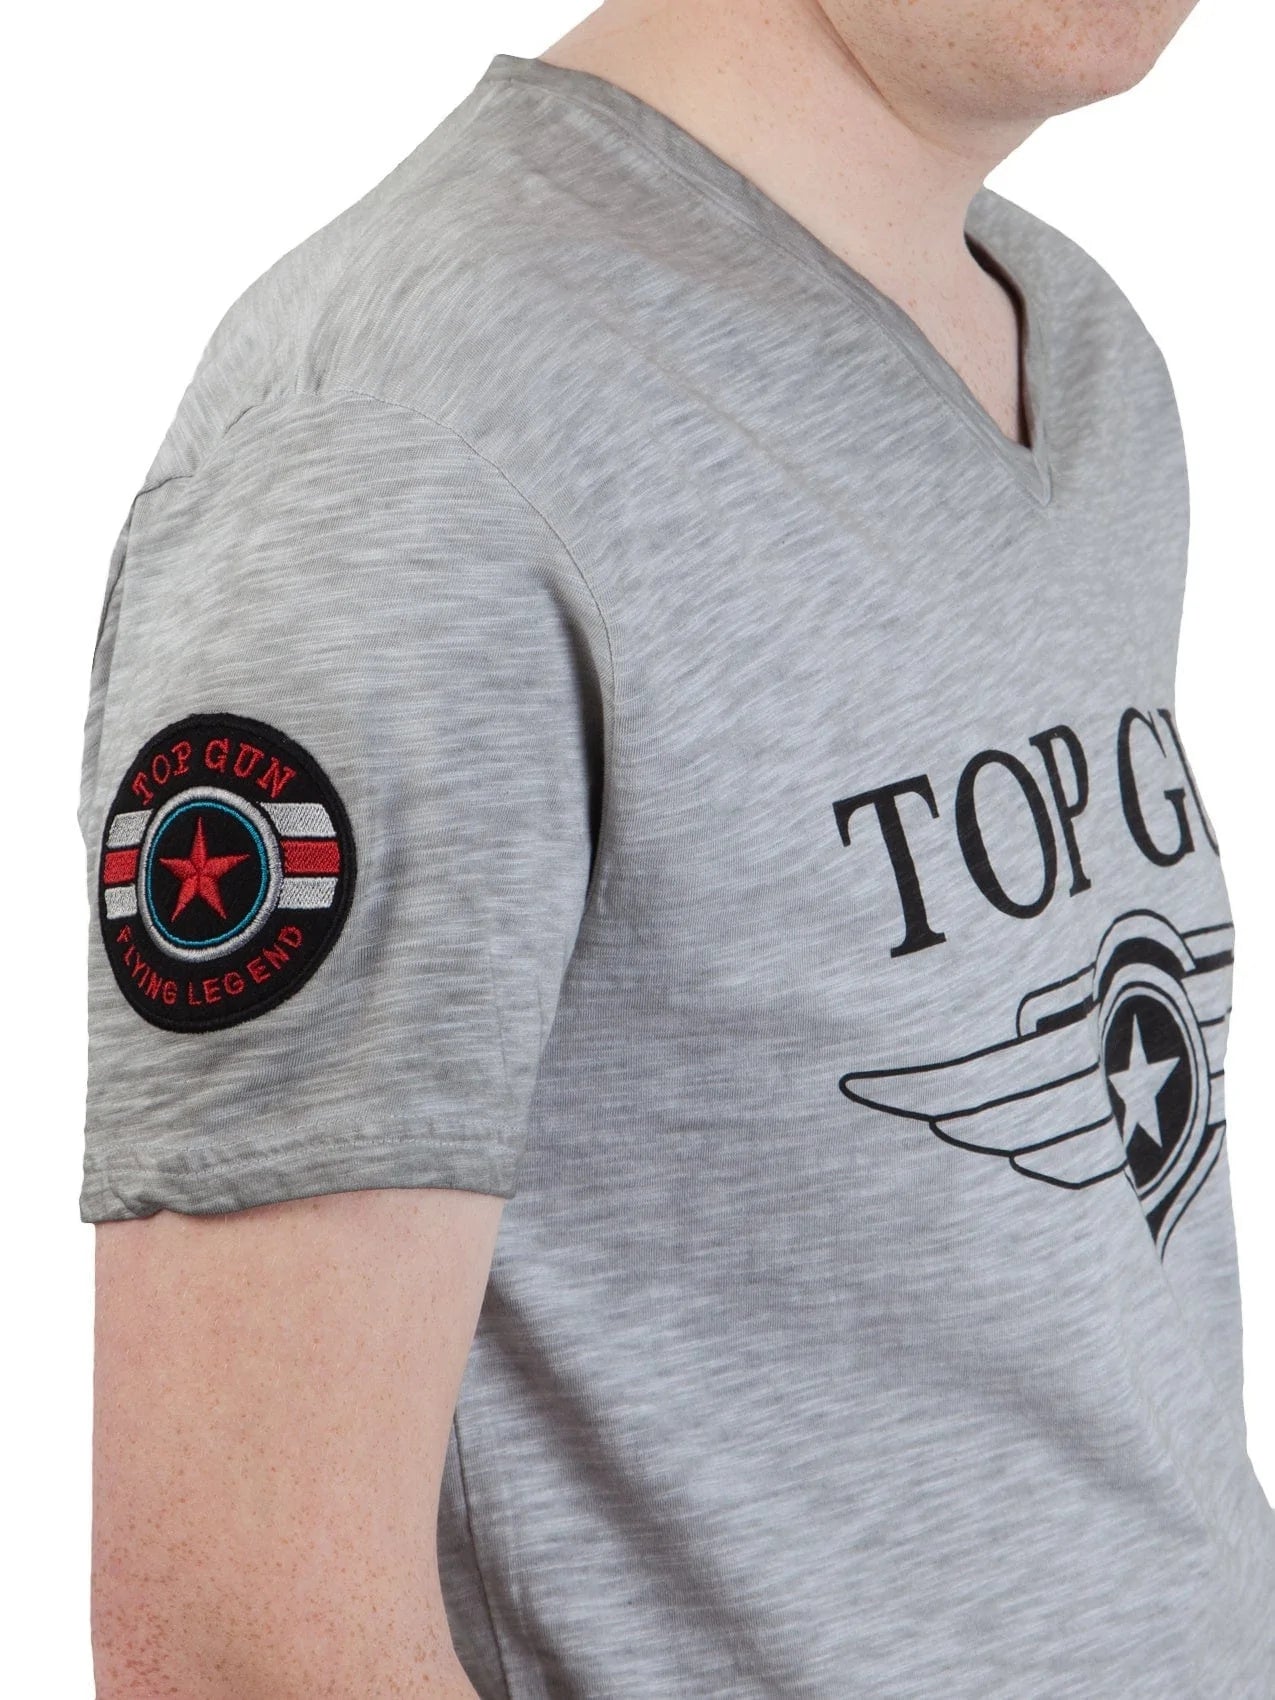 Top Gun"Stormy" T-shirt